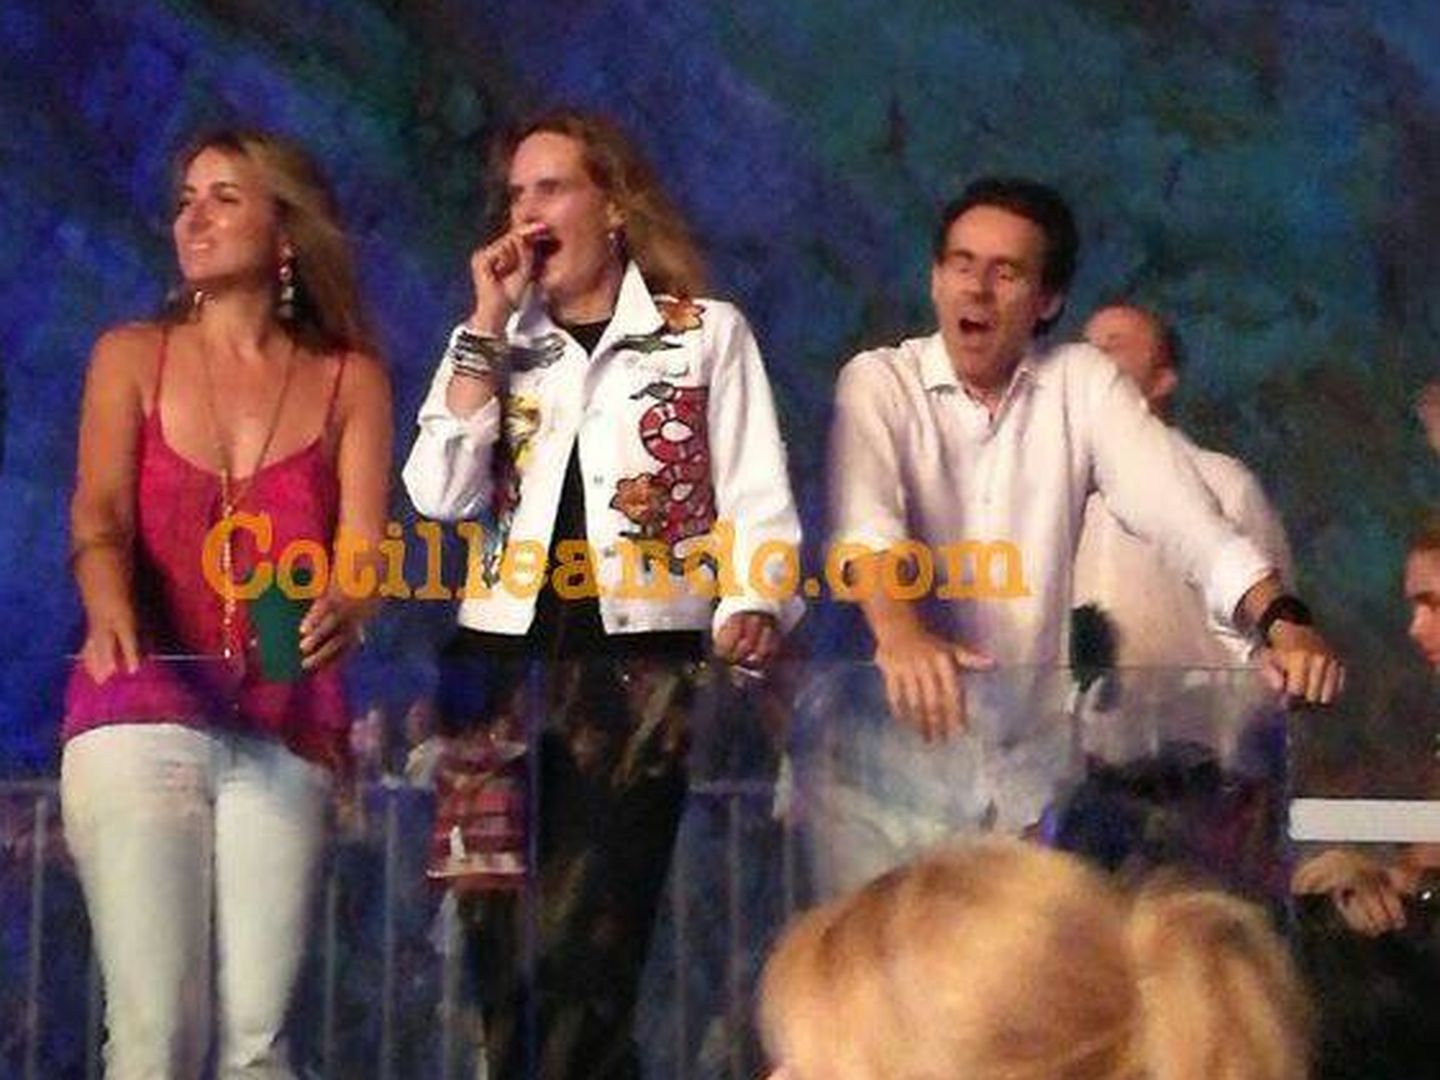 Löpez Madrid y unos amigos en el concierto de Eros Ramazzotti en Stalite. (Foto: Cotilleando.com)